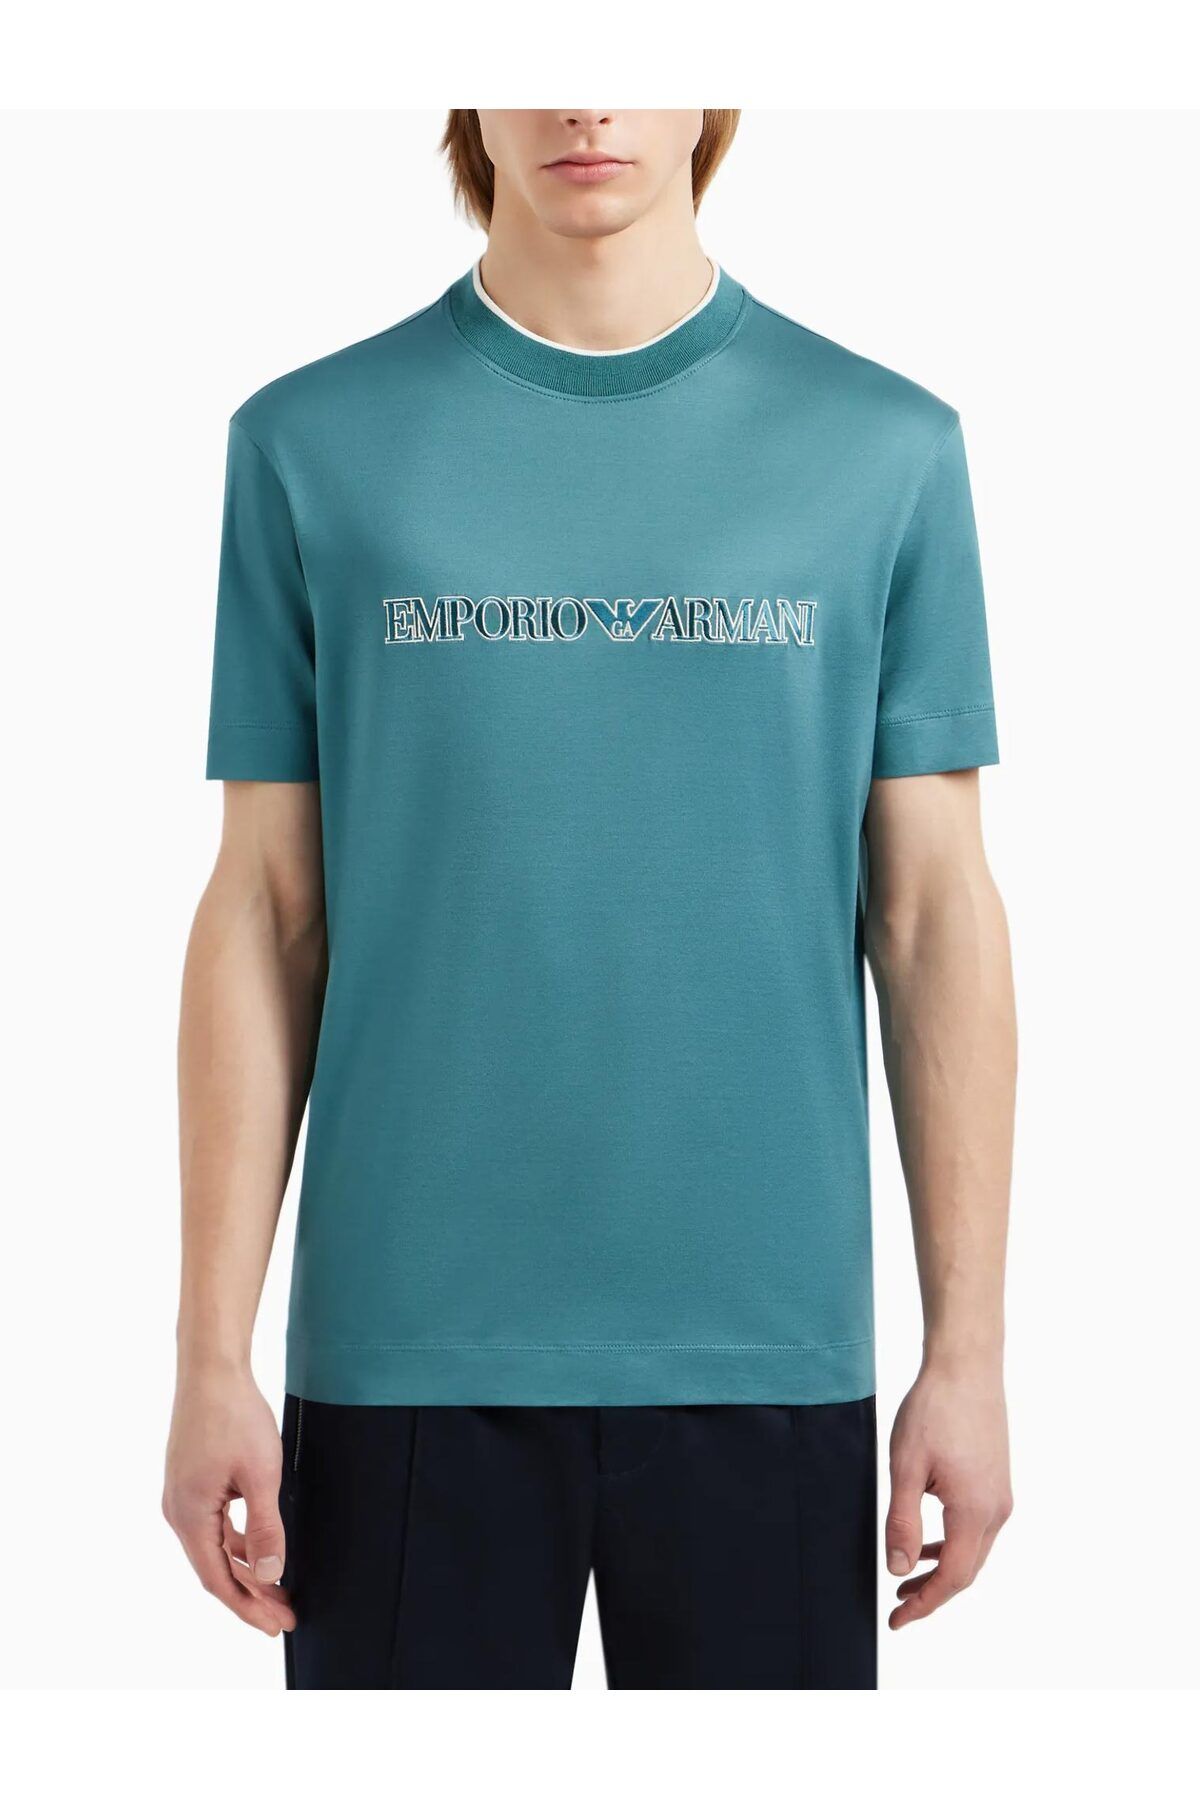 Emporio Armani Erkek Logolu Kısa Kollu Pamuklu Yeşil T-Shirt 3D1TD4 1JUVZ-0756